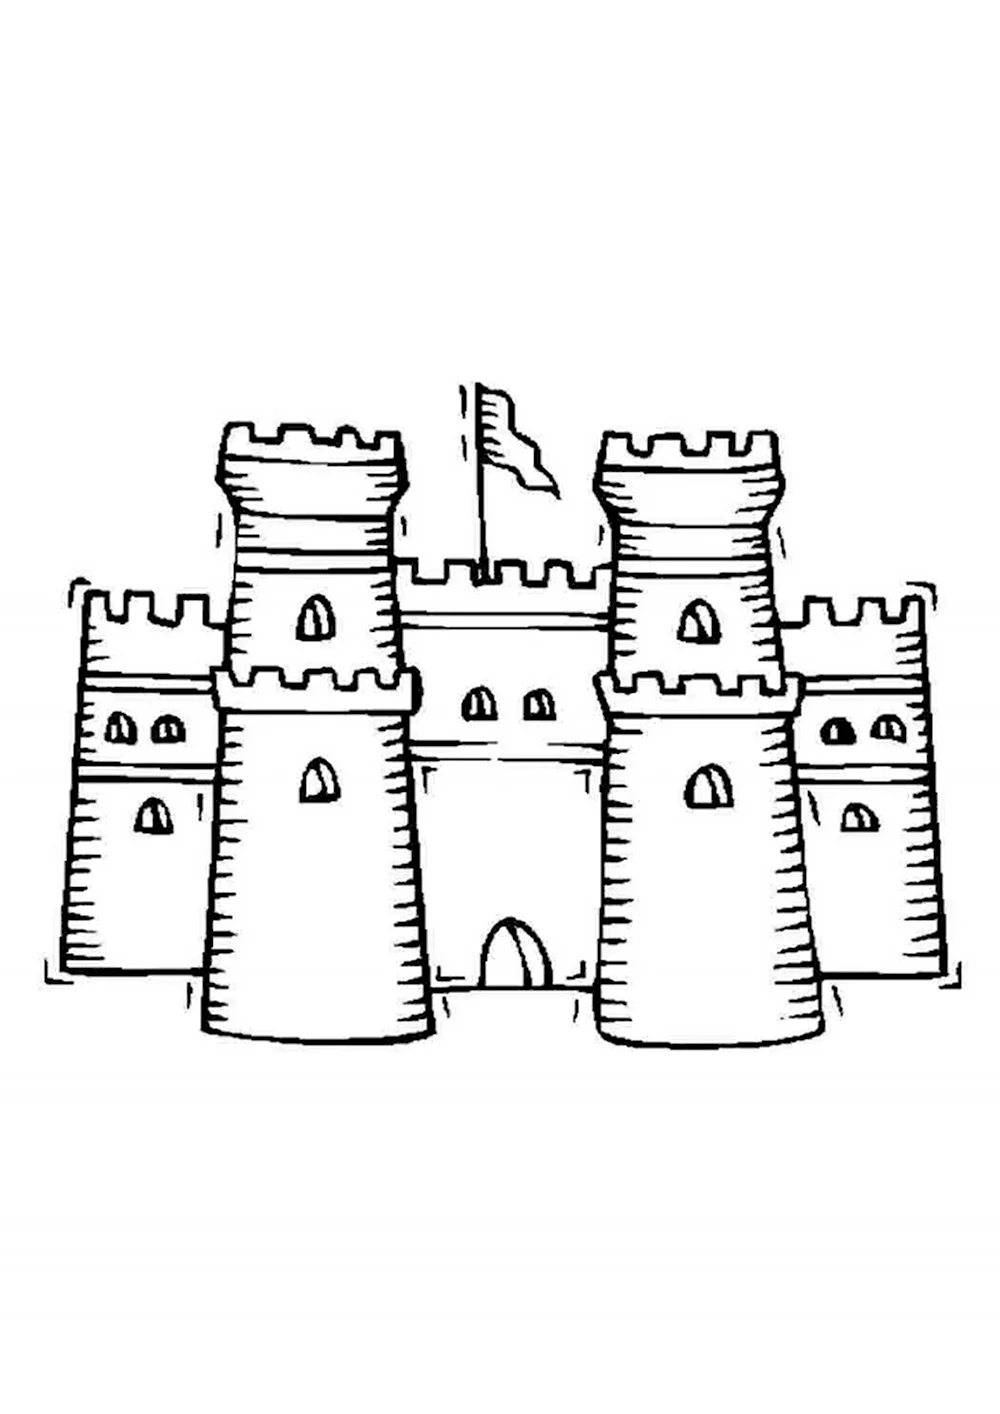 Каменный замок средневековья спереди